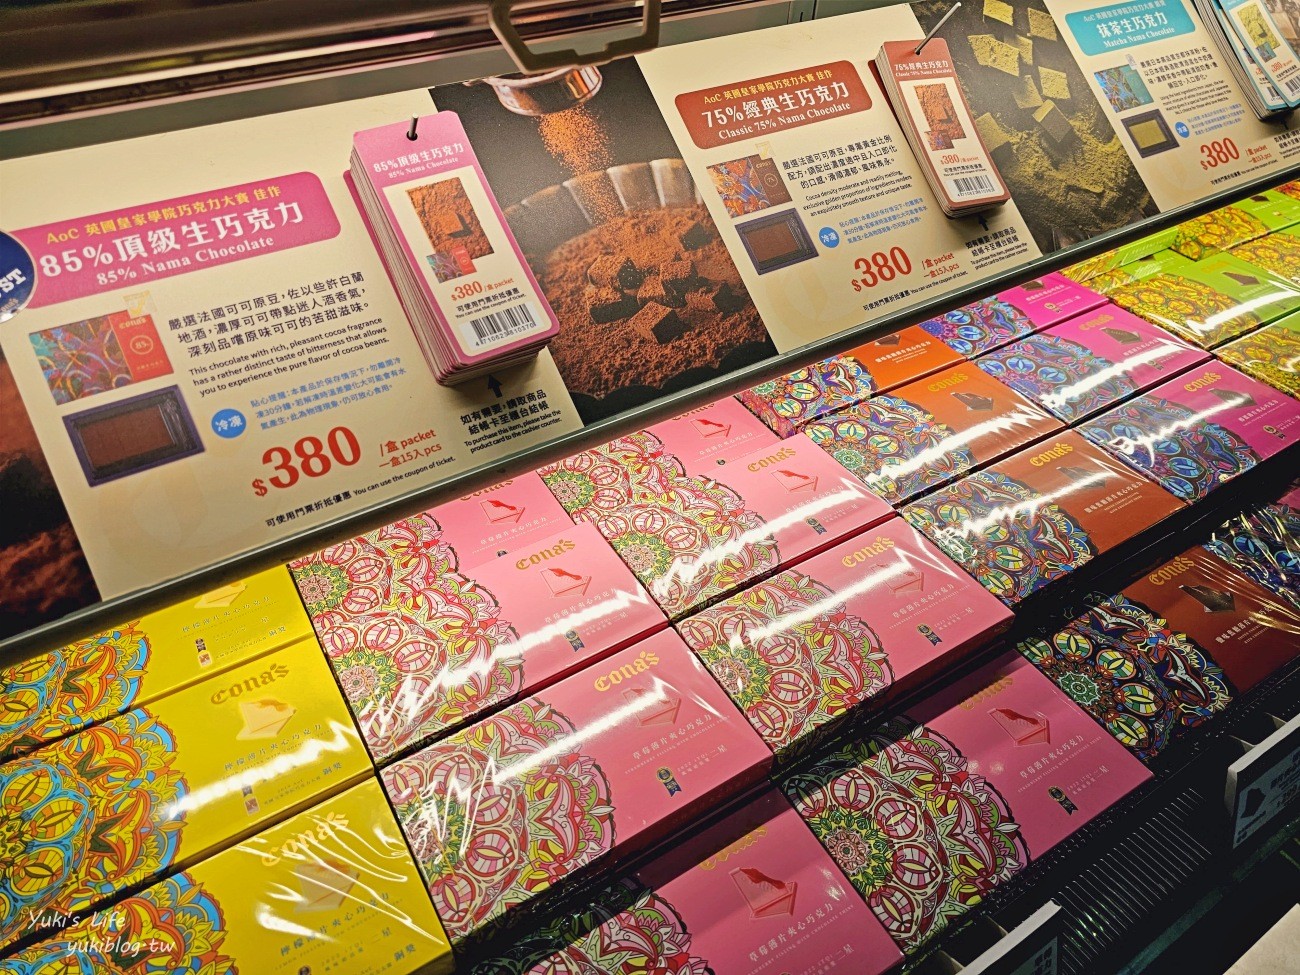 Cona's妮娜巧克力夢想城堡，南投埔里巧克力觀光工廠門票&介紹 - yuki.tw